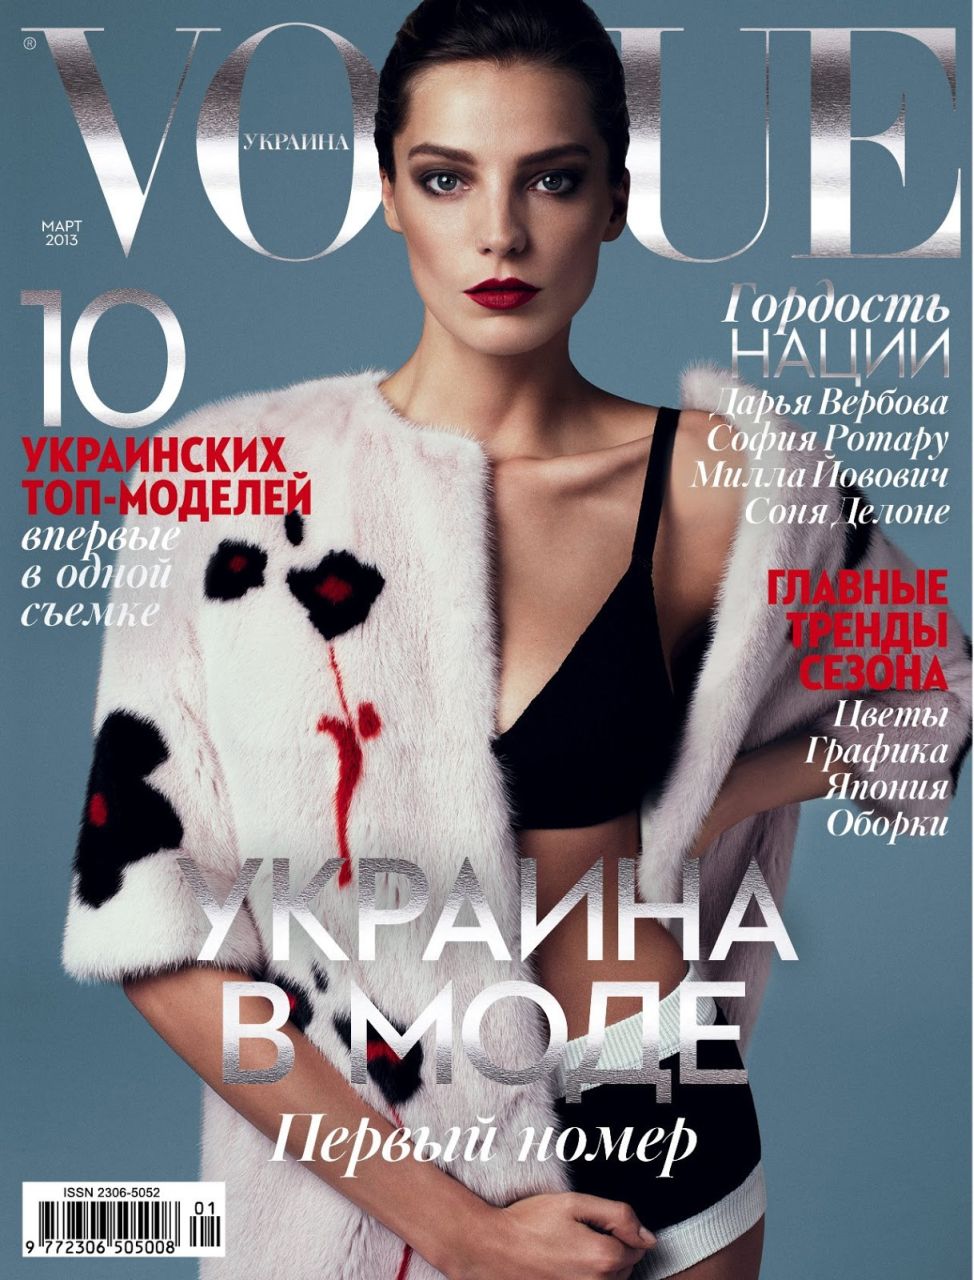 Daria Werbowy - seksowna modelka w sesji Stevena Pana w ukraińskim Vogue